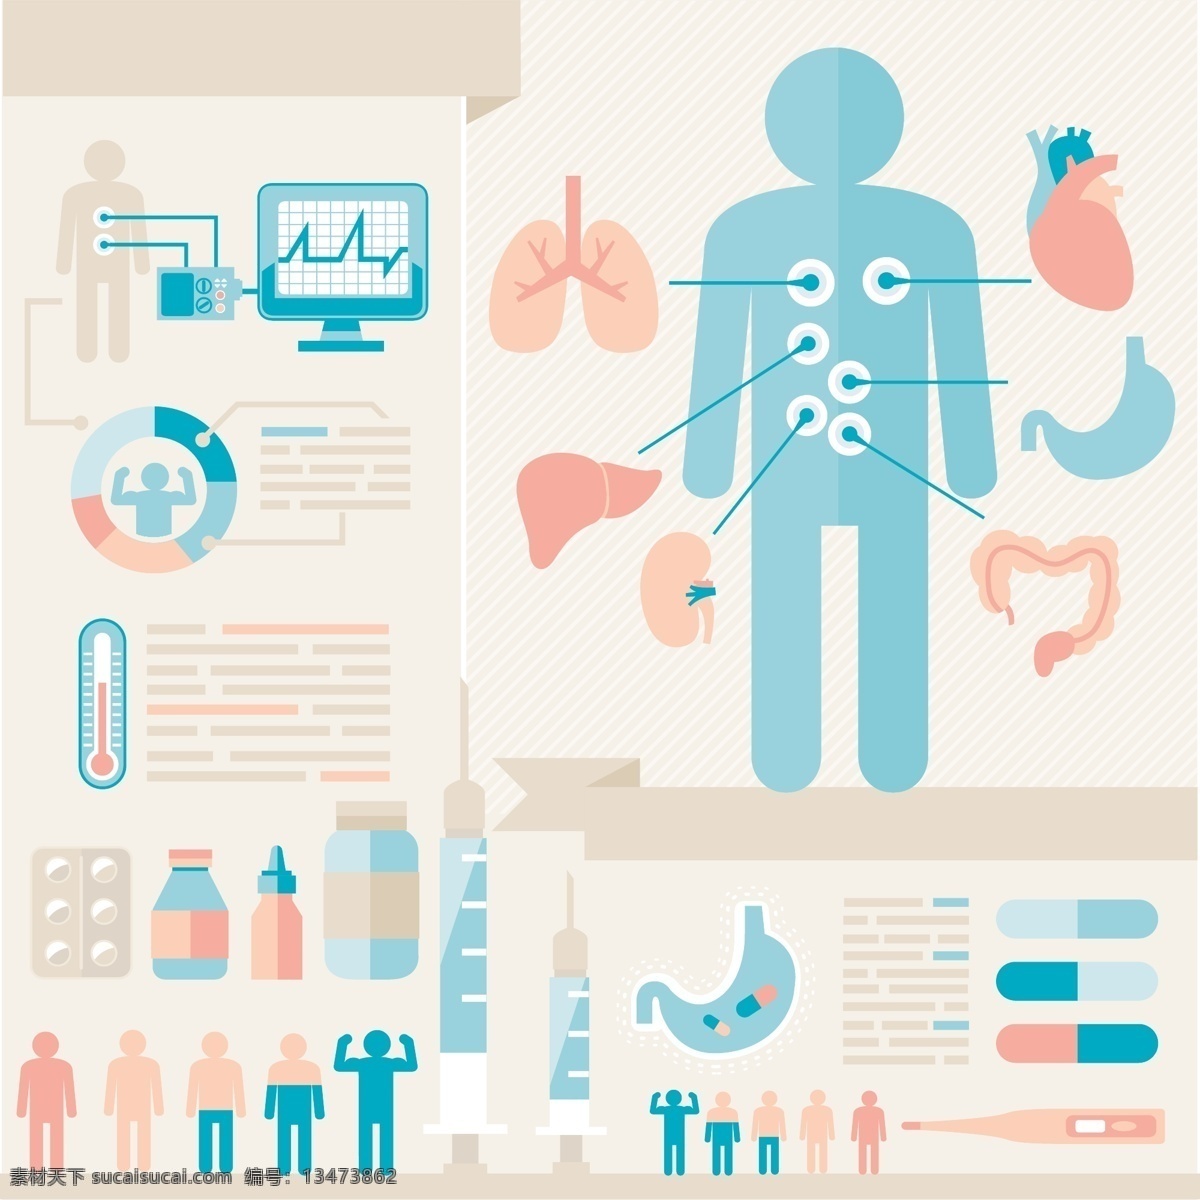 人体内脏图表 人体内脏 人体器官 医疗图表 医学 医疗 生活百科 矢量素材 白色